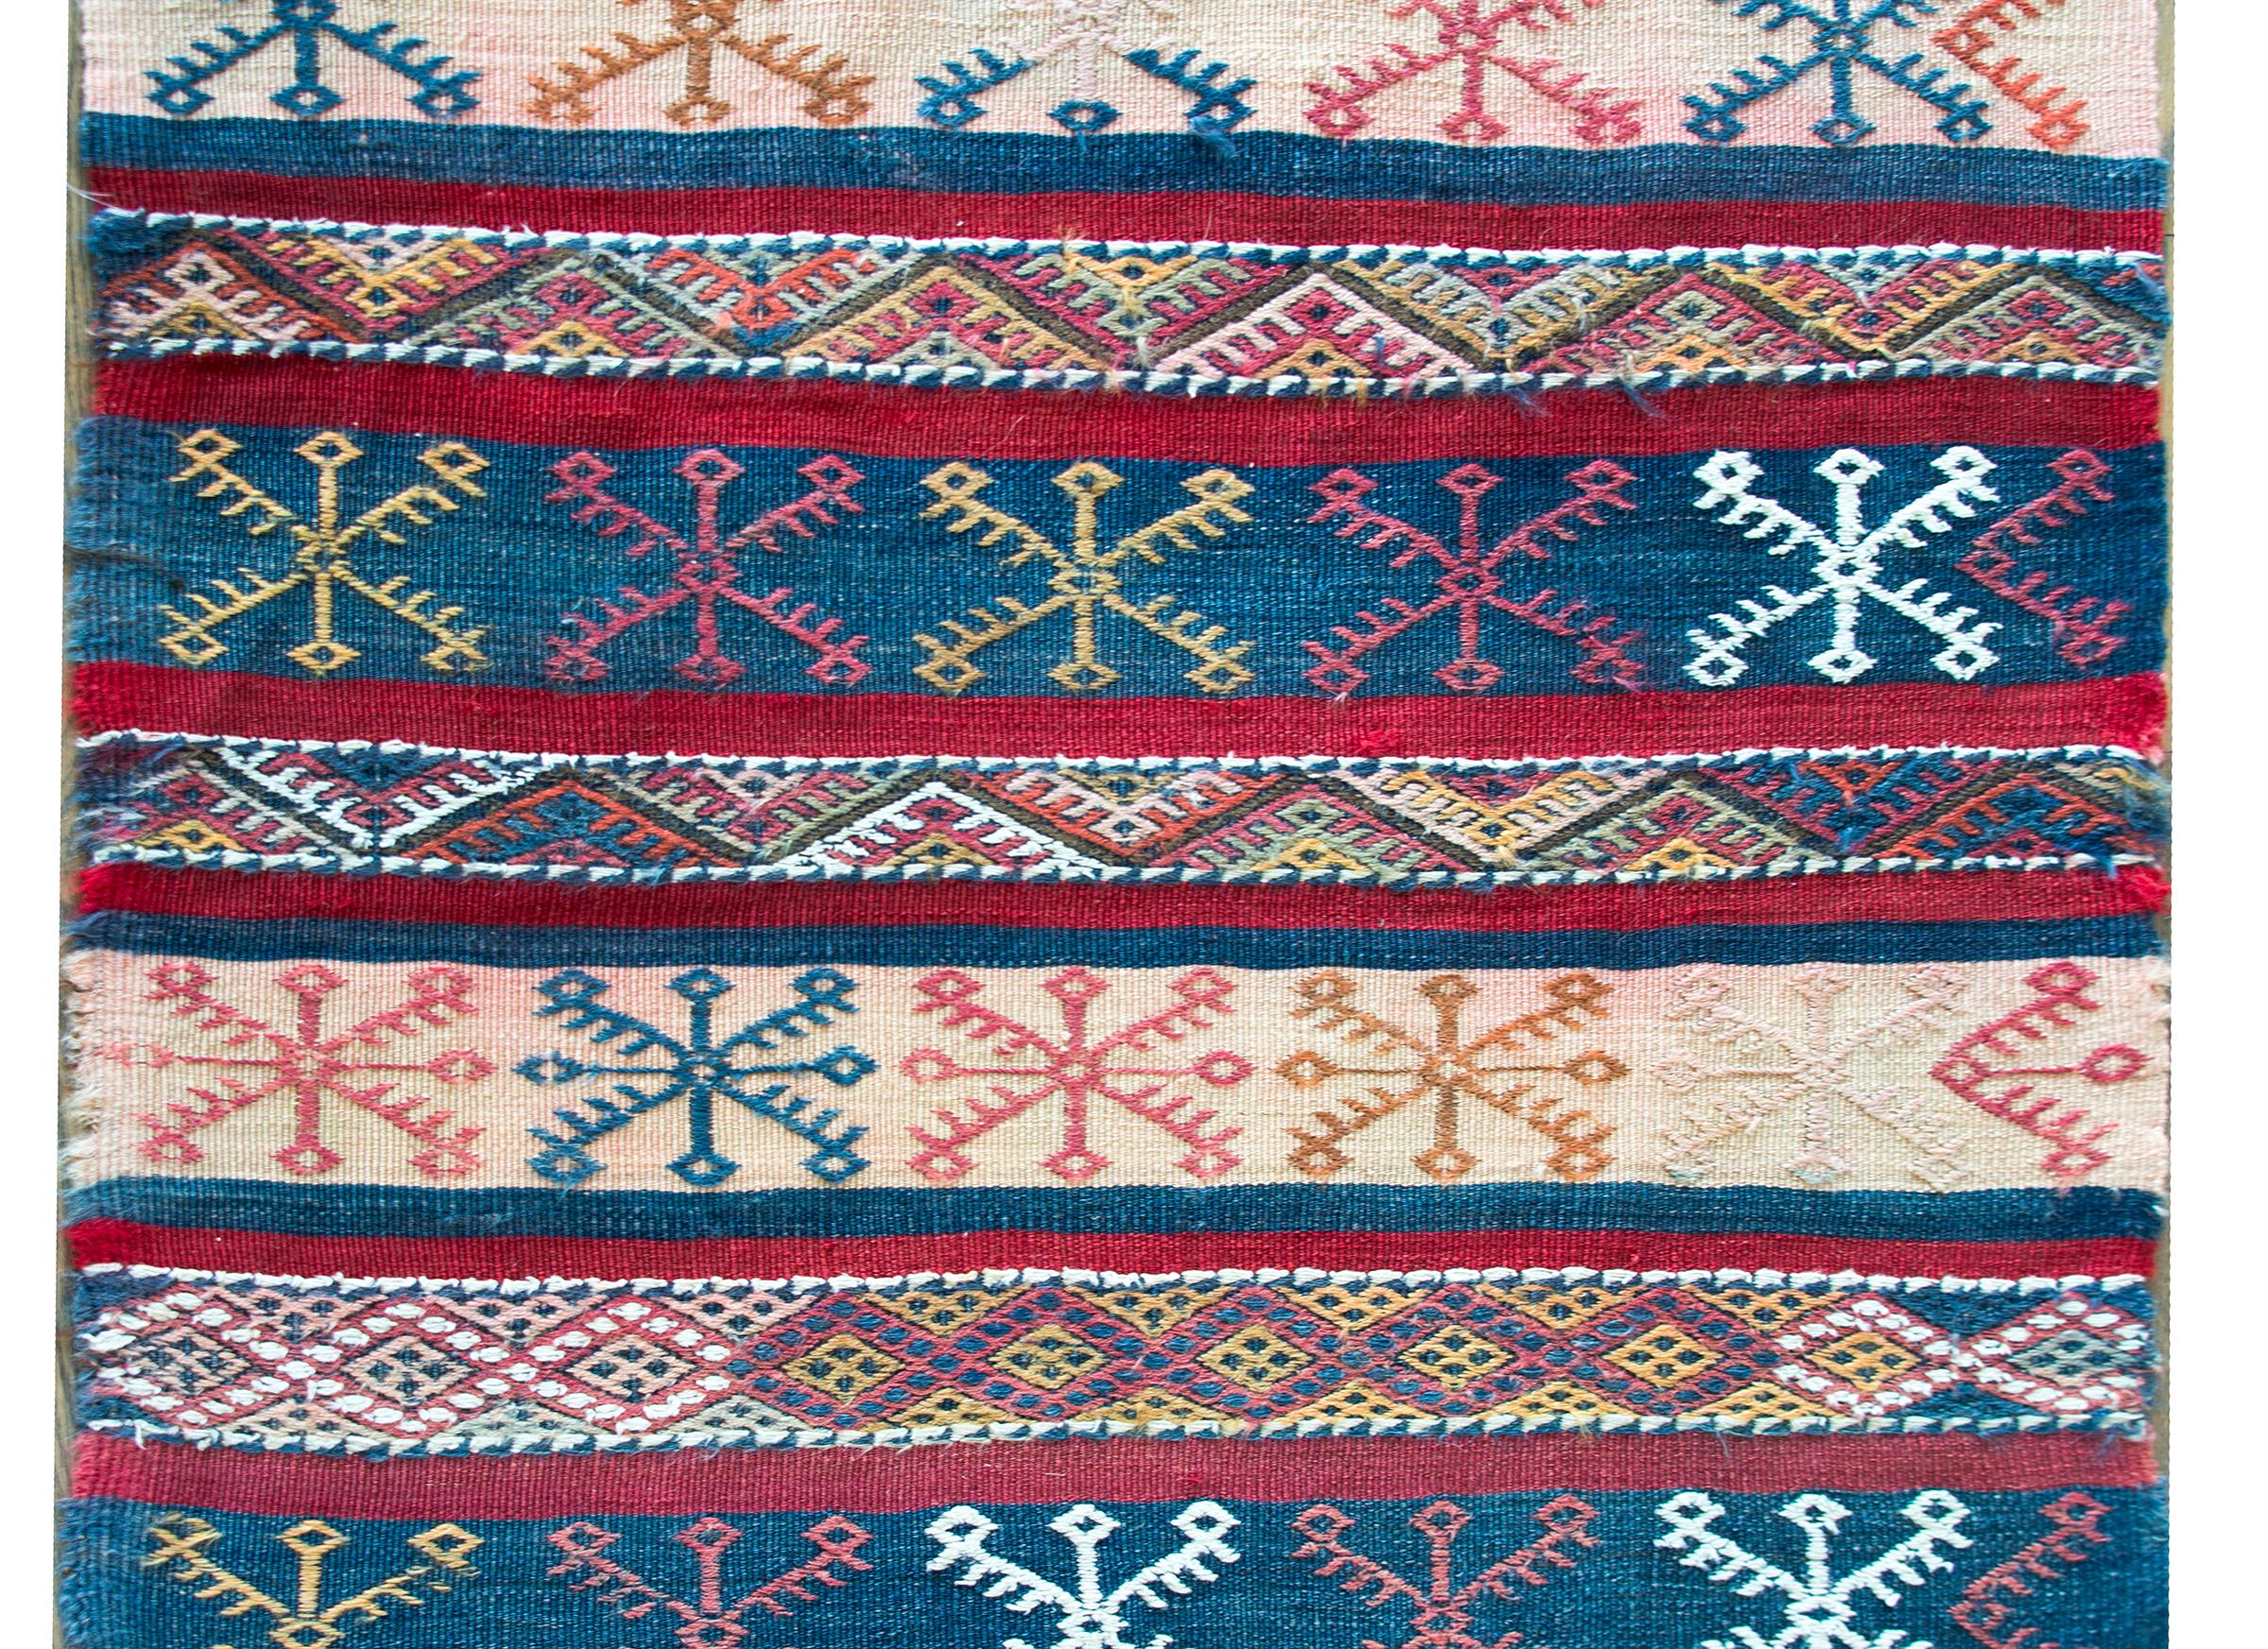 Ein schicker marokkanischer Kelimteppich im Vintage-Stil mit einem wunderschönen indigoblauen, purpurroten und cremefarbenen Streifenmuster mit aufgestickten stilisierten Blumen auf dem gesamten Teppich.